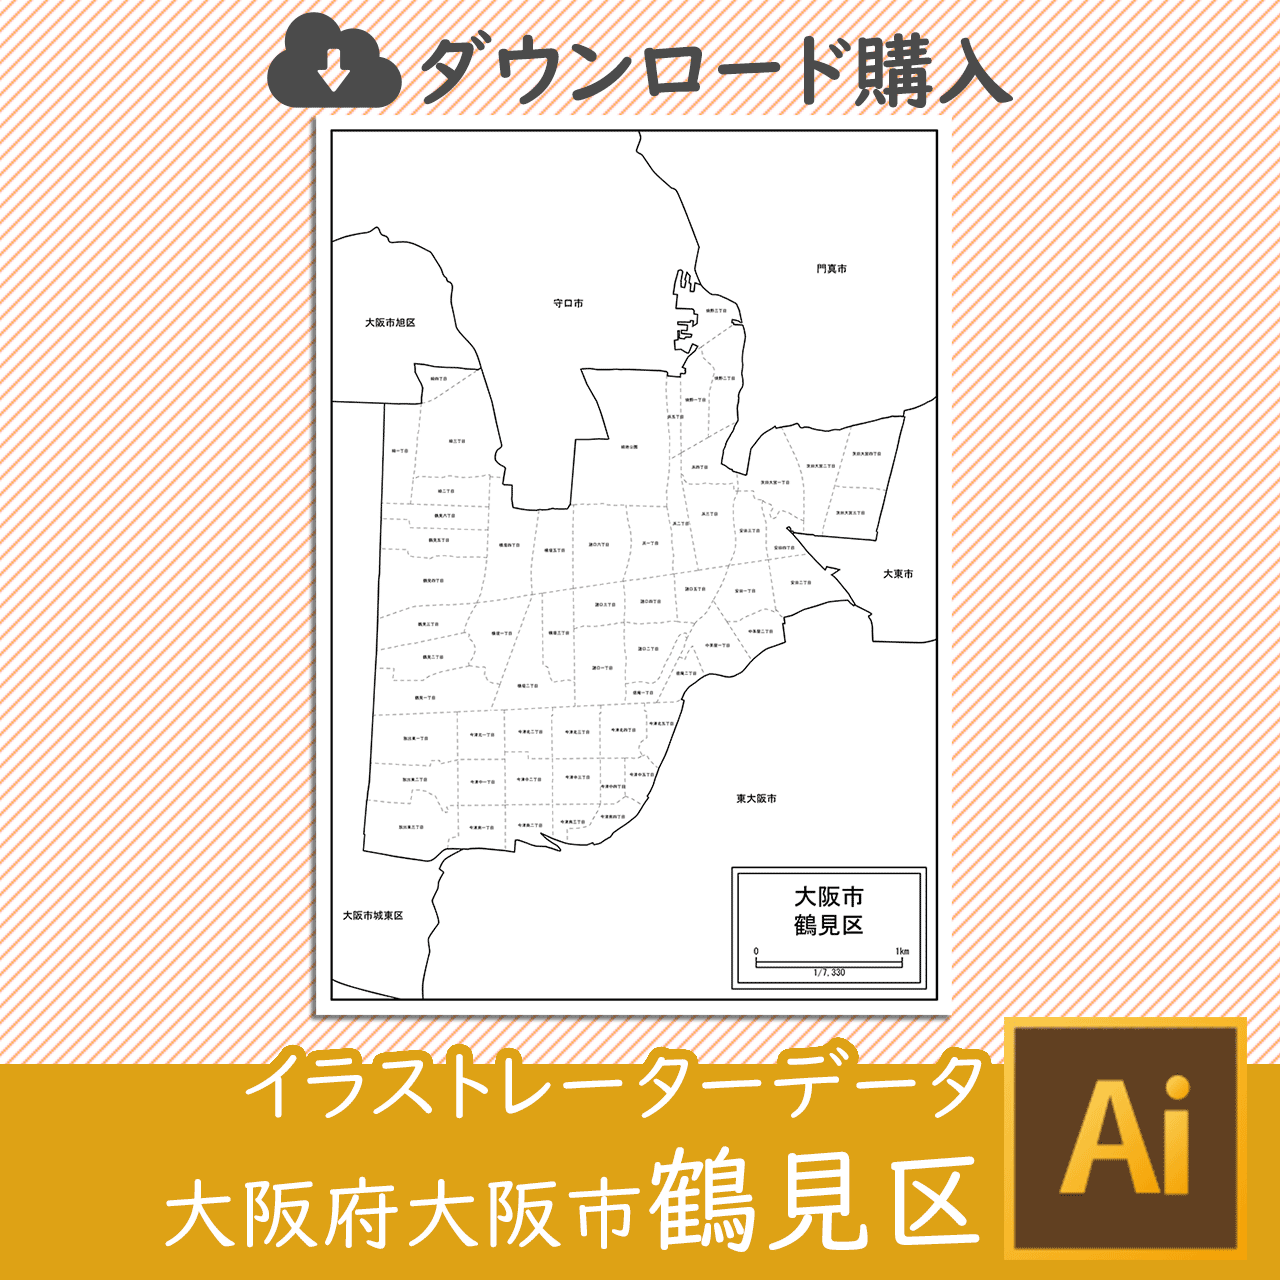 大阪市鶴見区のイラストレータデータのサムネイル